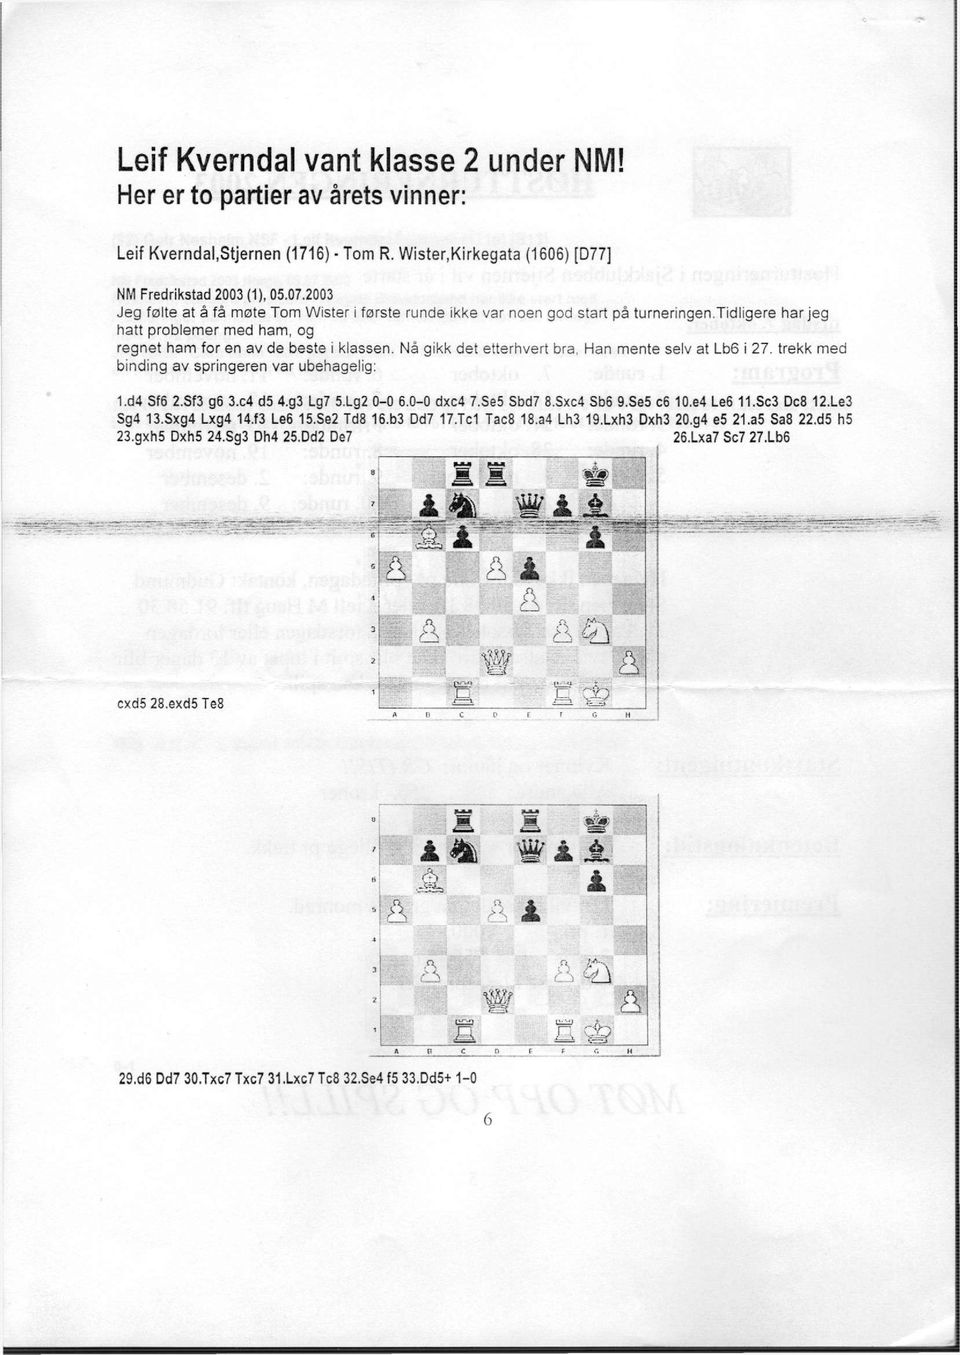 Nå gikk det etterhvert bra, Han mente selv at Lb6 i 27. trekk med binding av springeren var ubehagelig: 1.d4 Sf6 2.Sf3 g6 3x4 d5 4.g3 Lg7 5.Lg2 0-0 6.0-0 dxc4 7.Se5 Sbd7 8.Sxc4 Sb6 9.Se5 c6 10.